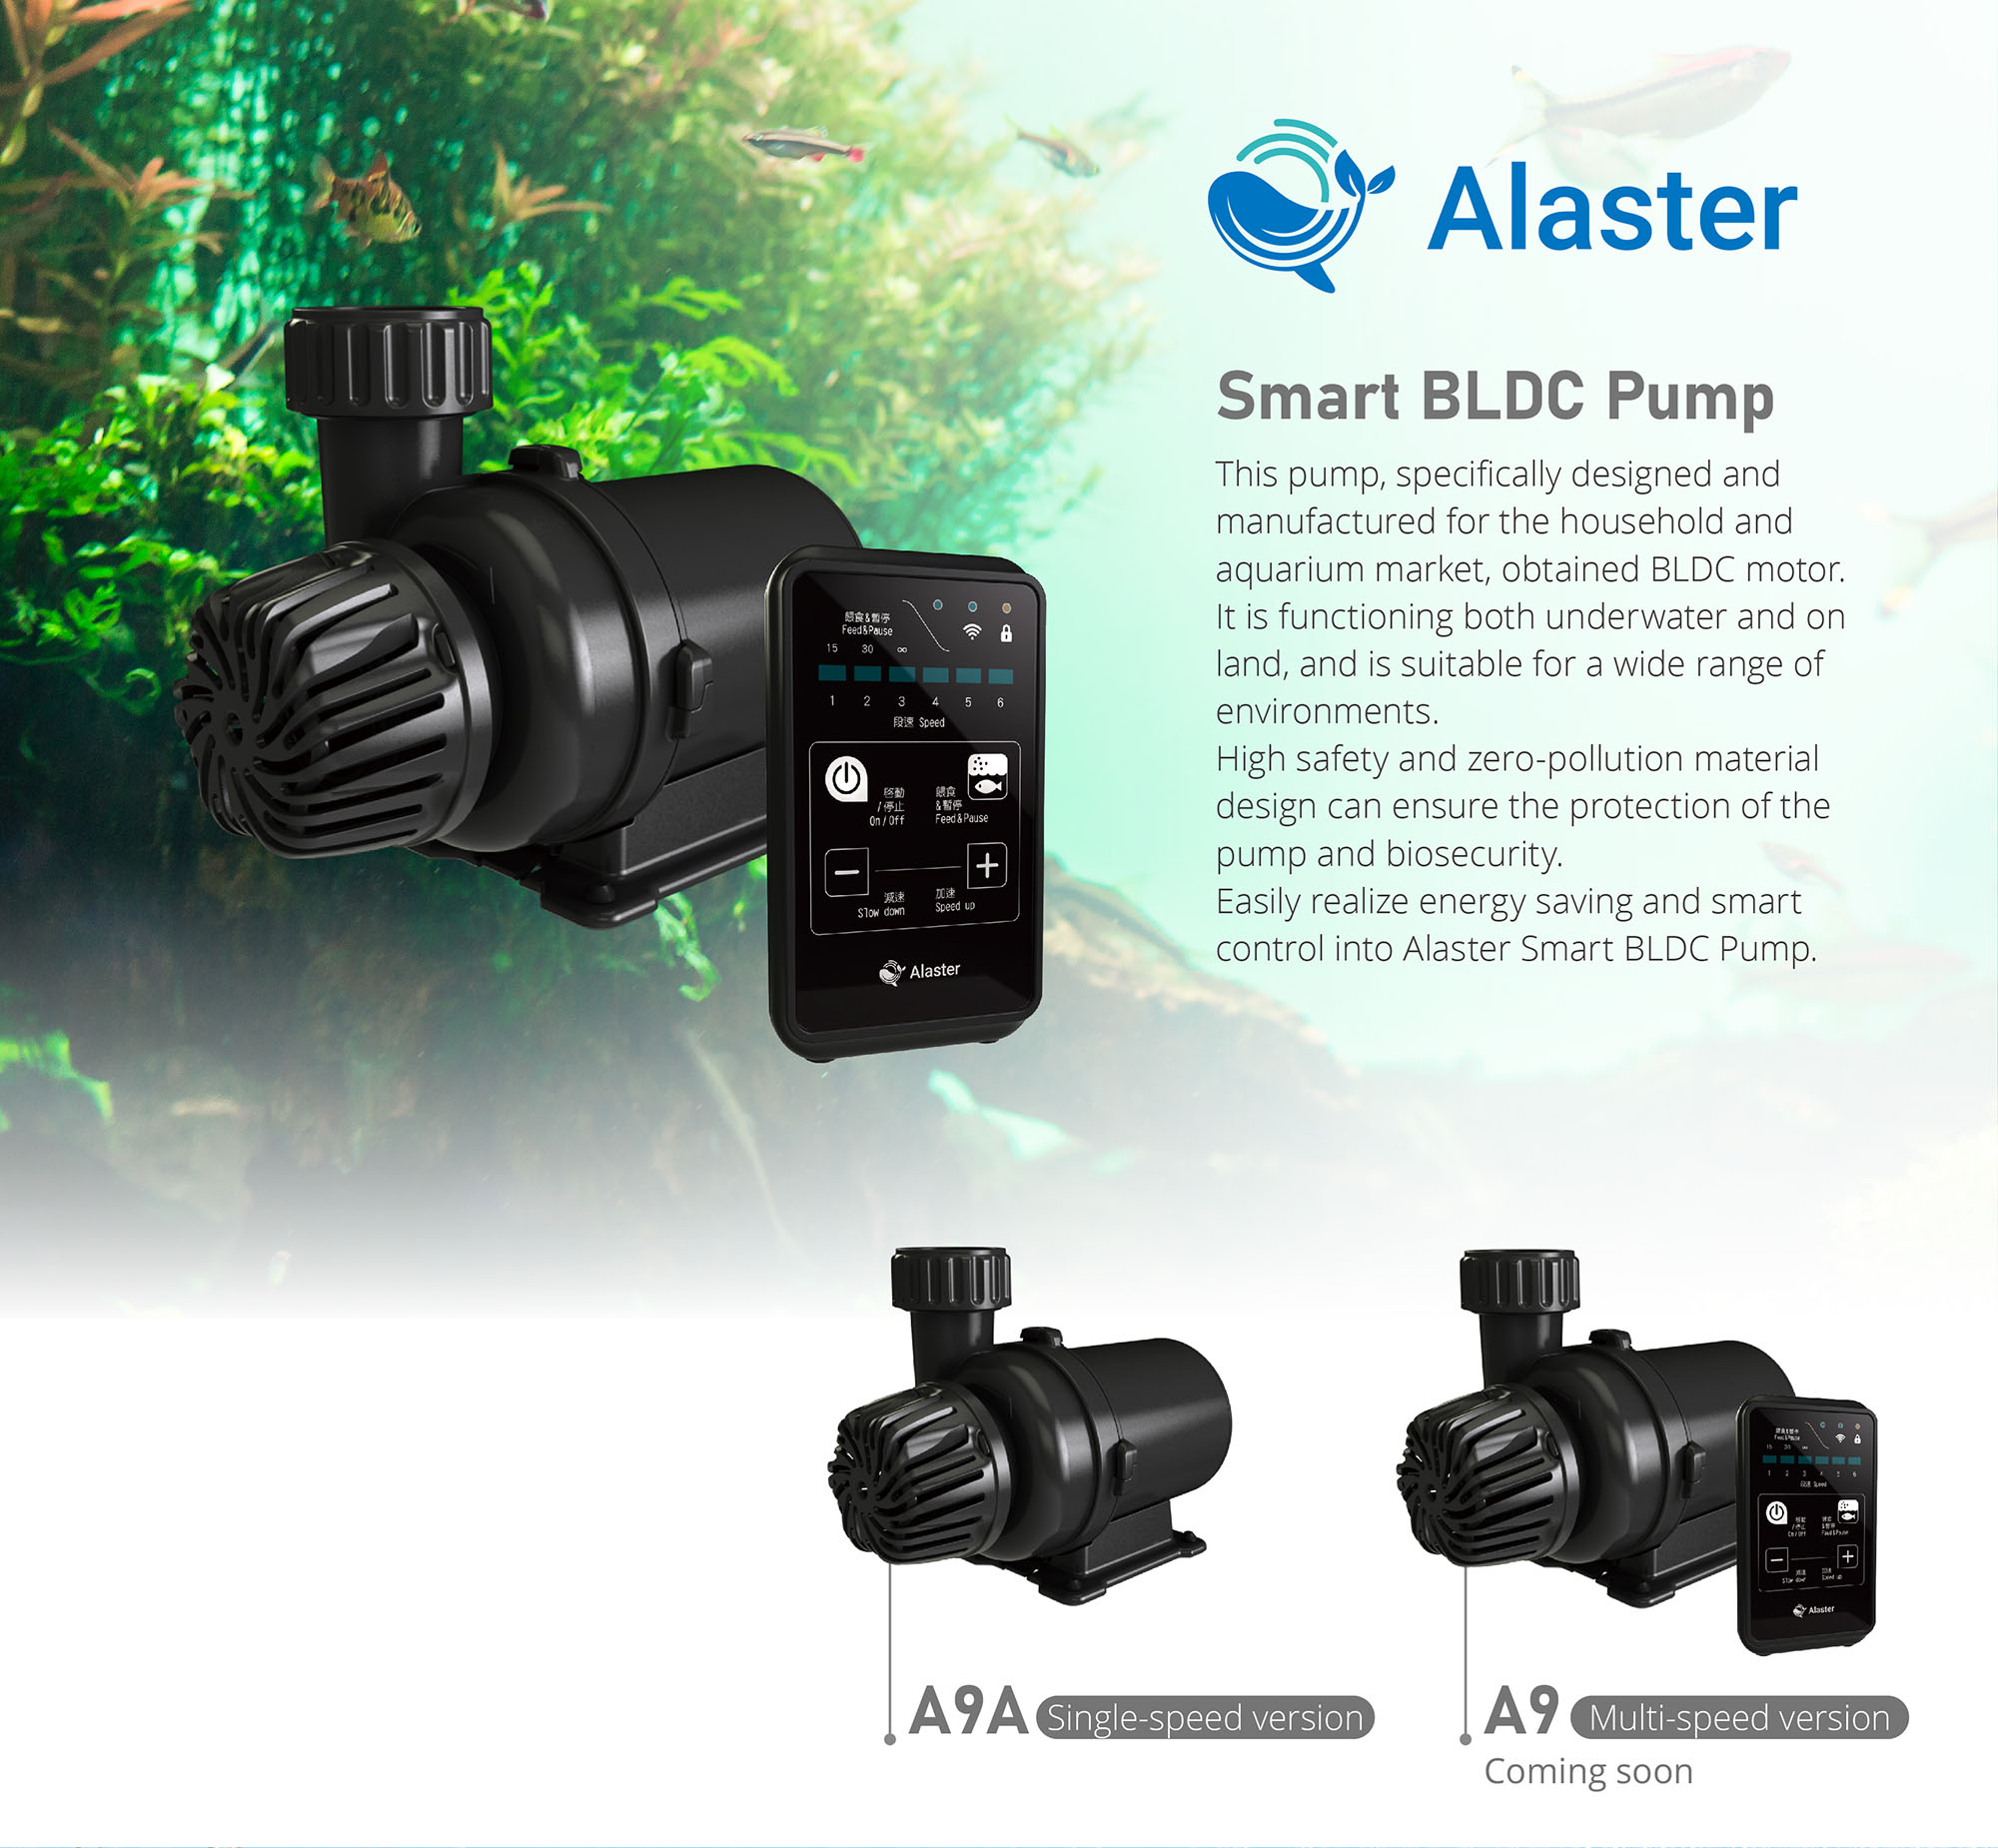 Alaster Smart BLDC Pump